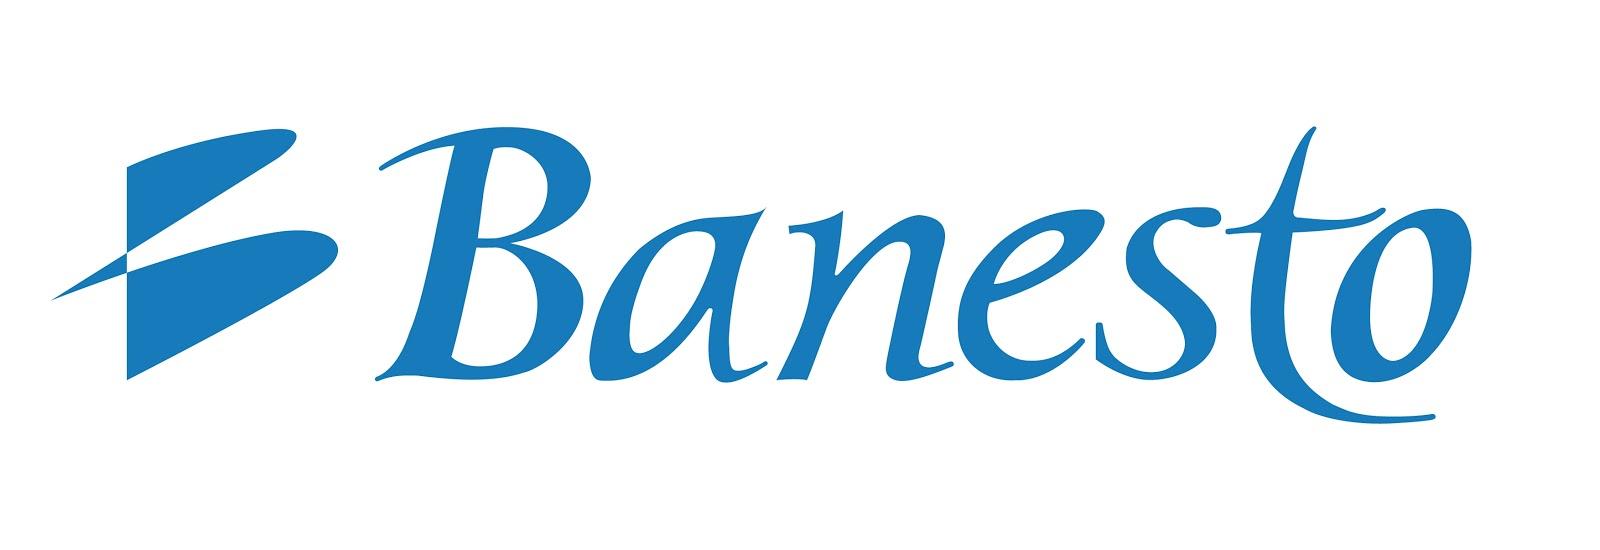 Absorción de Banesto por Banco Santander